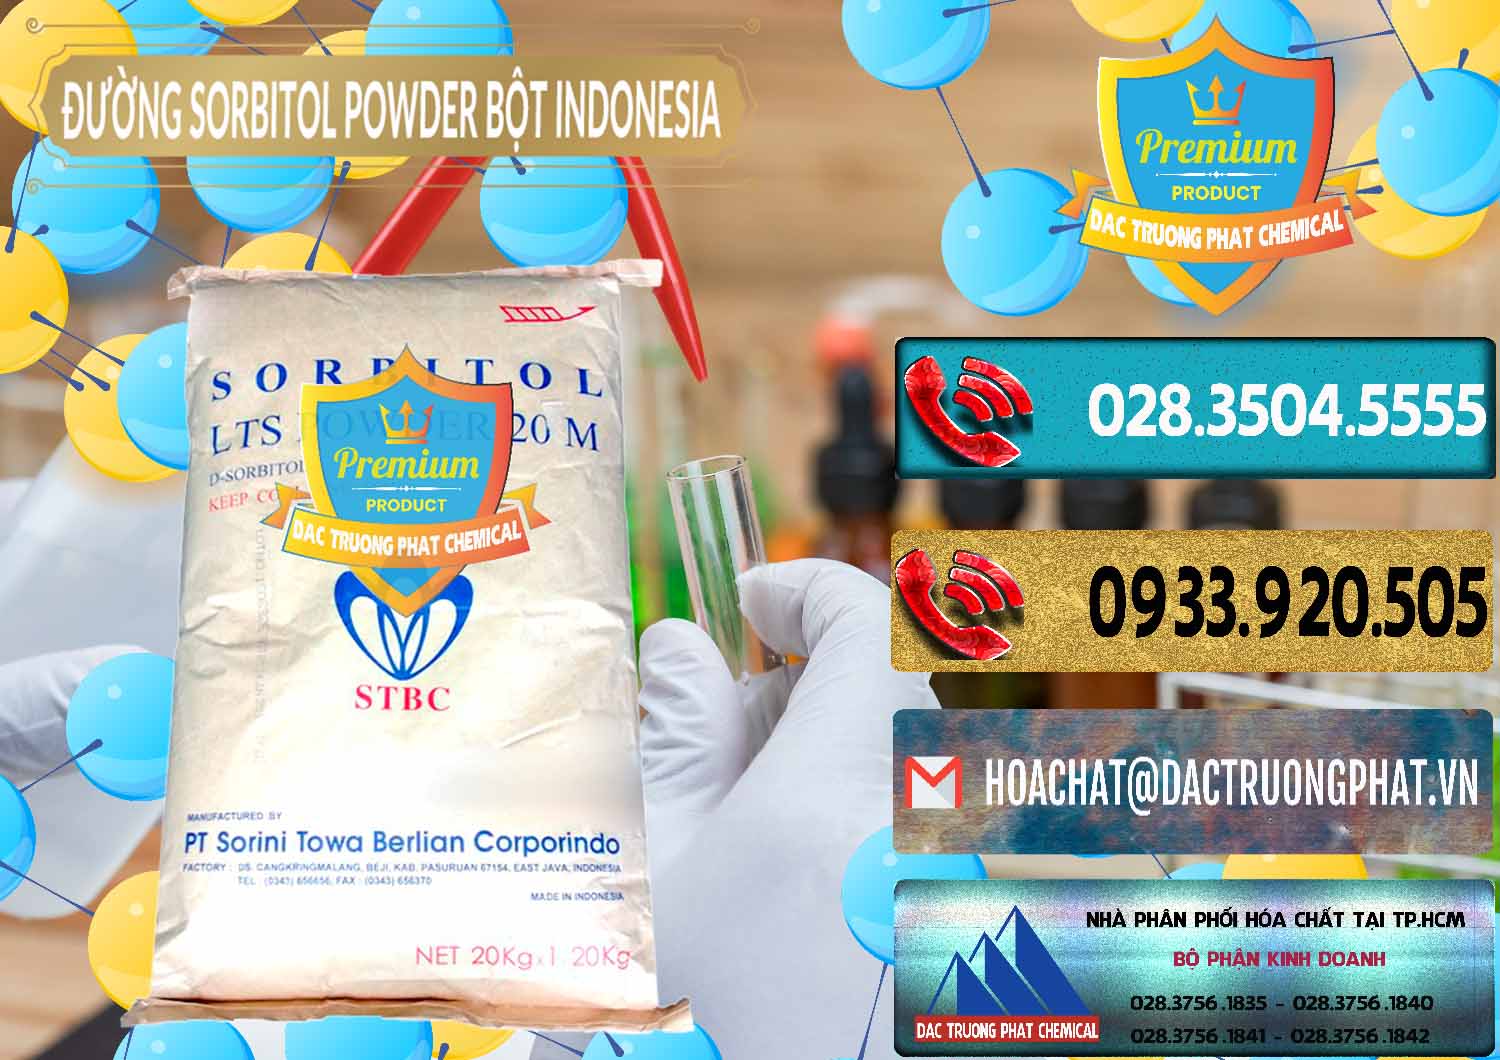 Chuyên bán - cung cấp D-Sorbitol Bột - C6H14O6 Food Grade Indonesia - 0320 - Nơi phân phối & kinh doanh hóa chất tại TP.HCM - hoachatdetnhuom.com